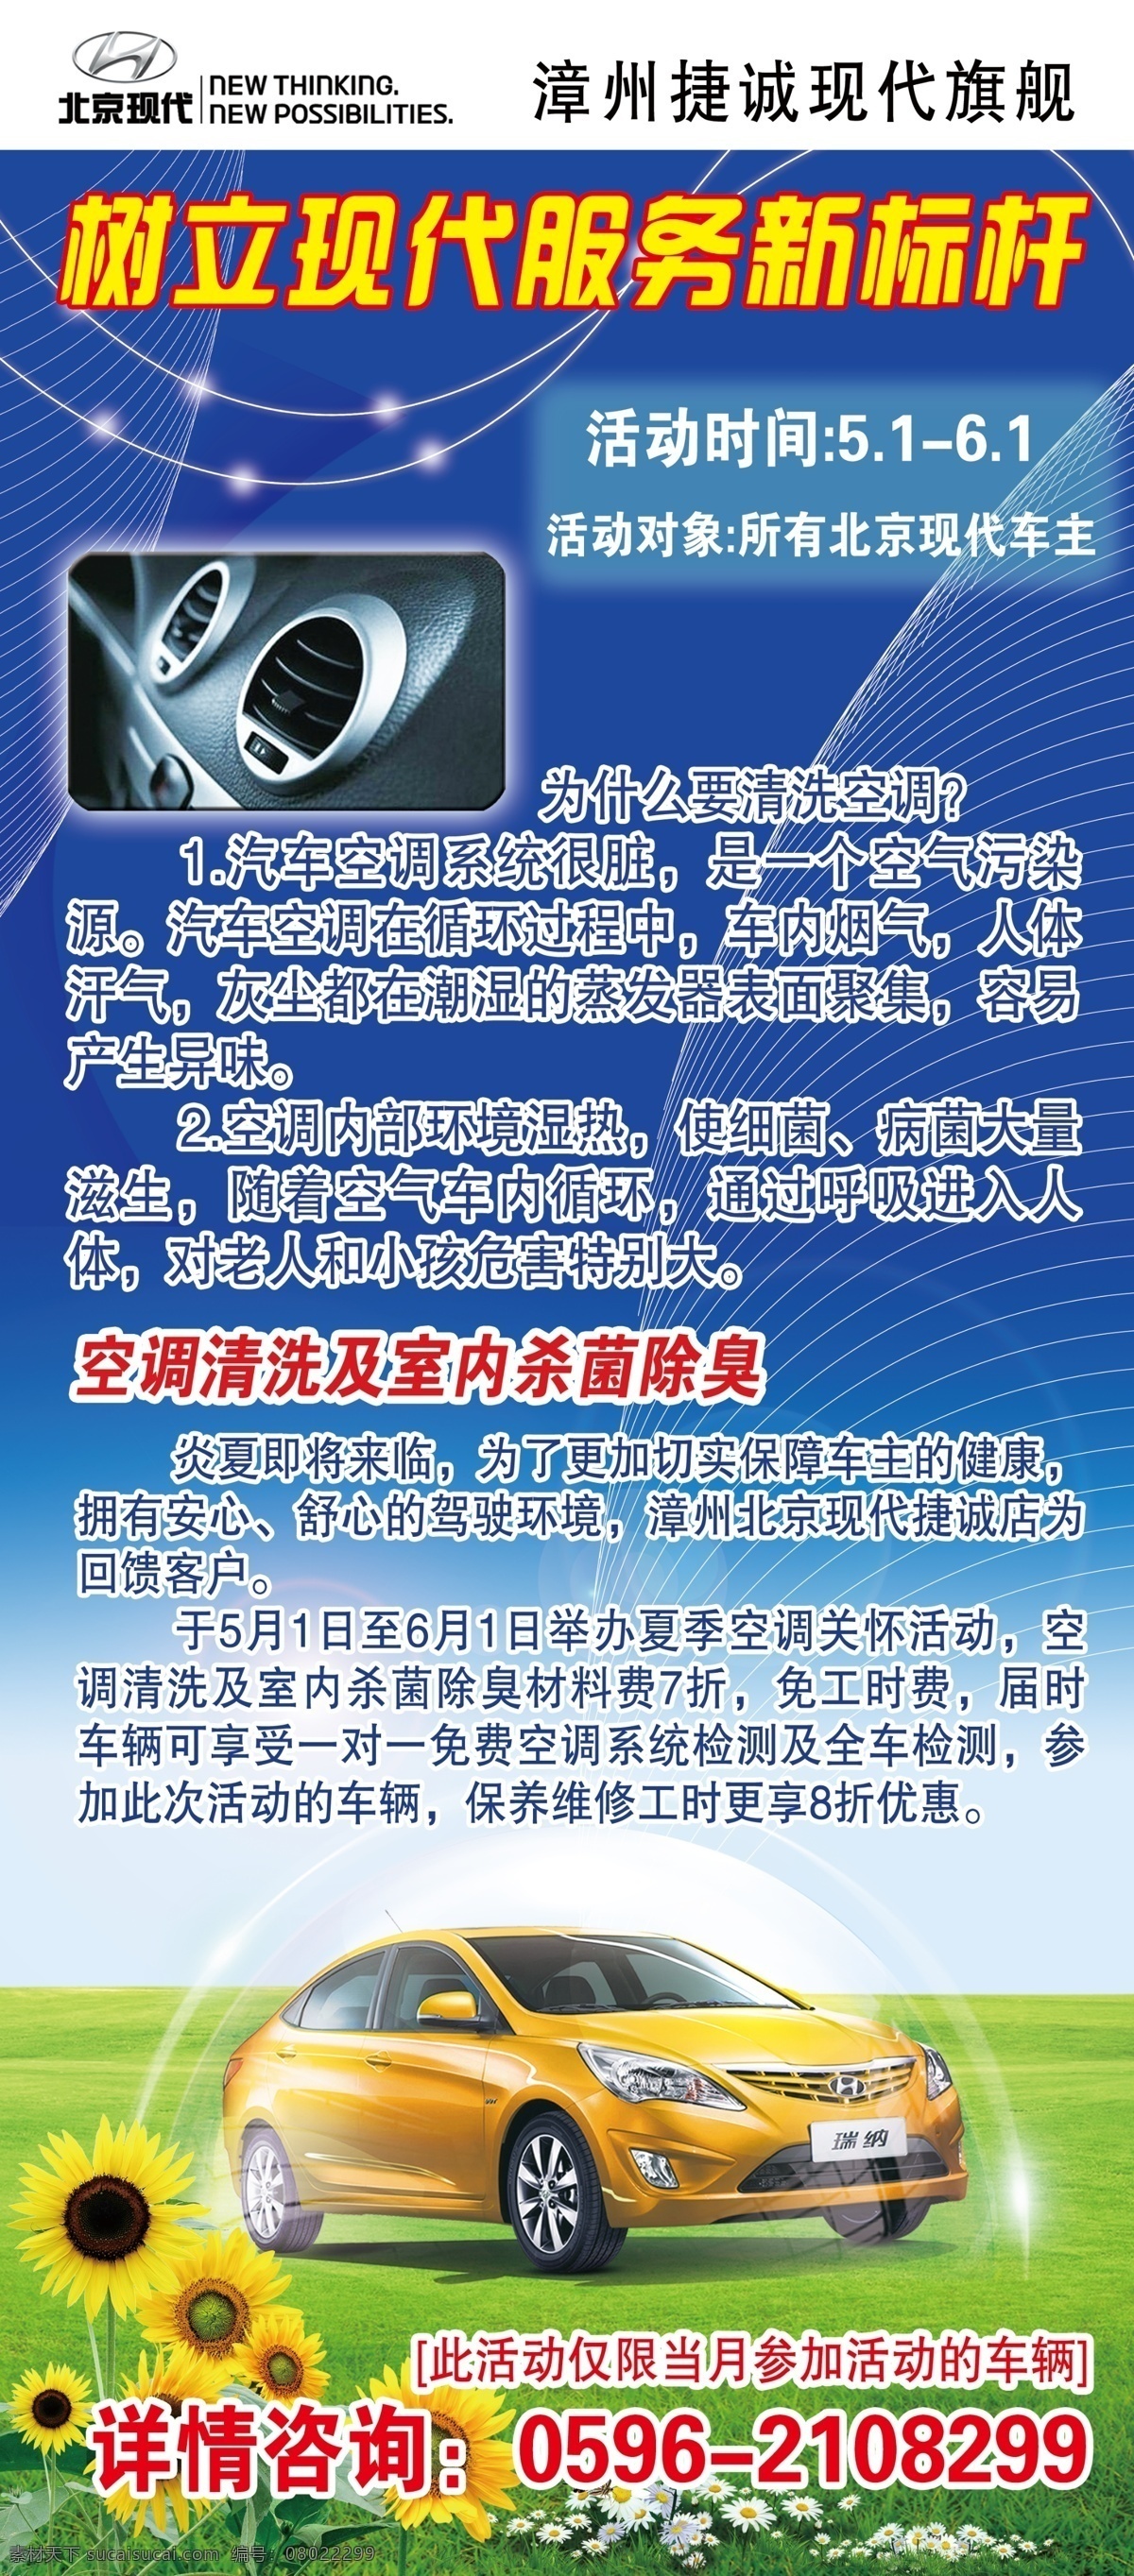 现代汽车海报 展架 汽车 空调 鲜花 北京现代 广告设计模板 源文件